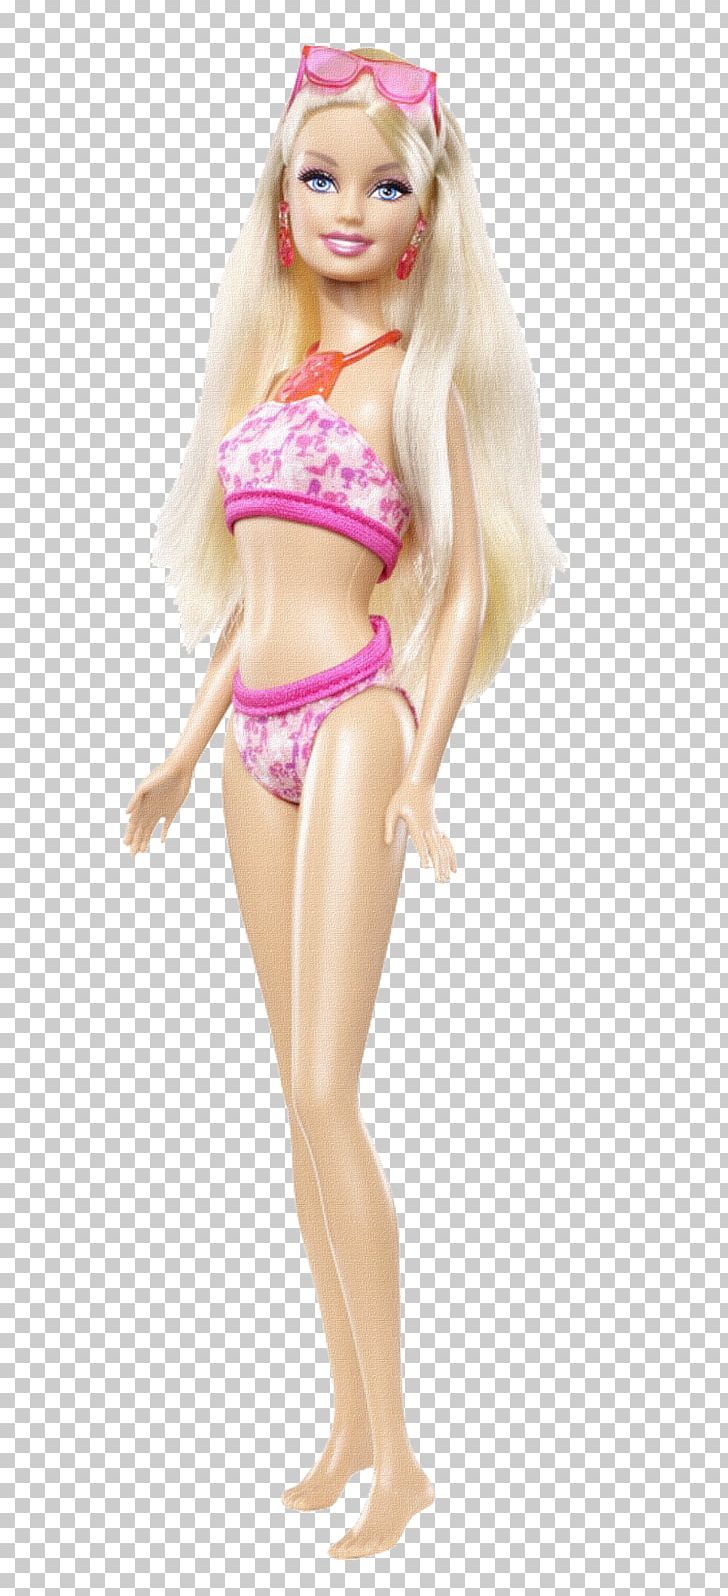 Razernij Evaluatie Bergbeklimmer Amazon.com Barbie Swimsuit Doll Bikini PNG, Clipart, Amazoncom, Art, Barbie,  Bikini, Clothing Free PNG Download